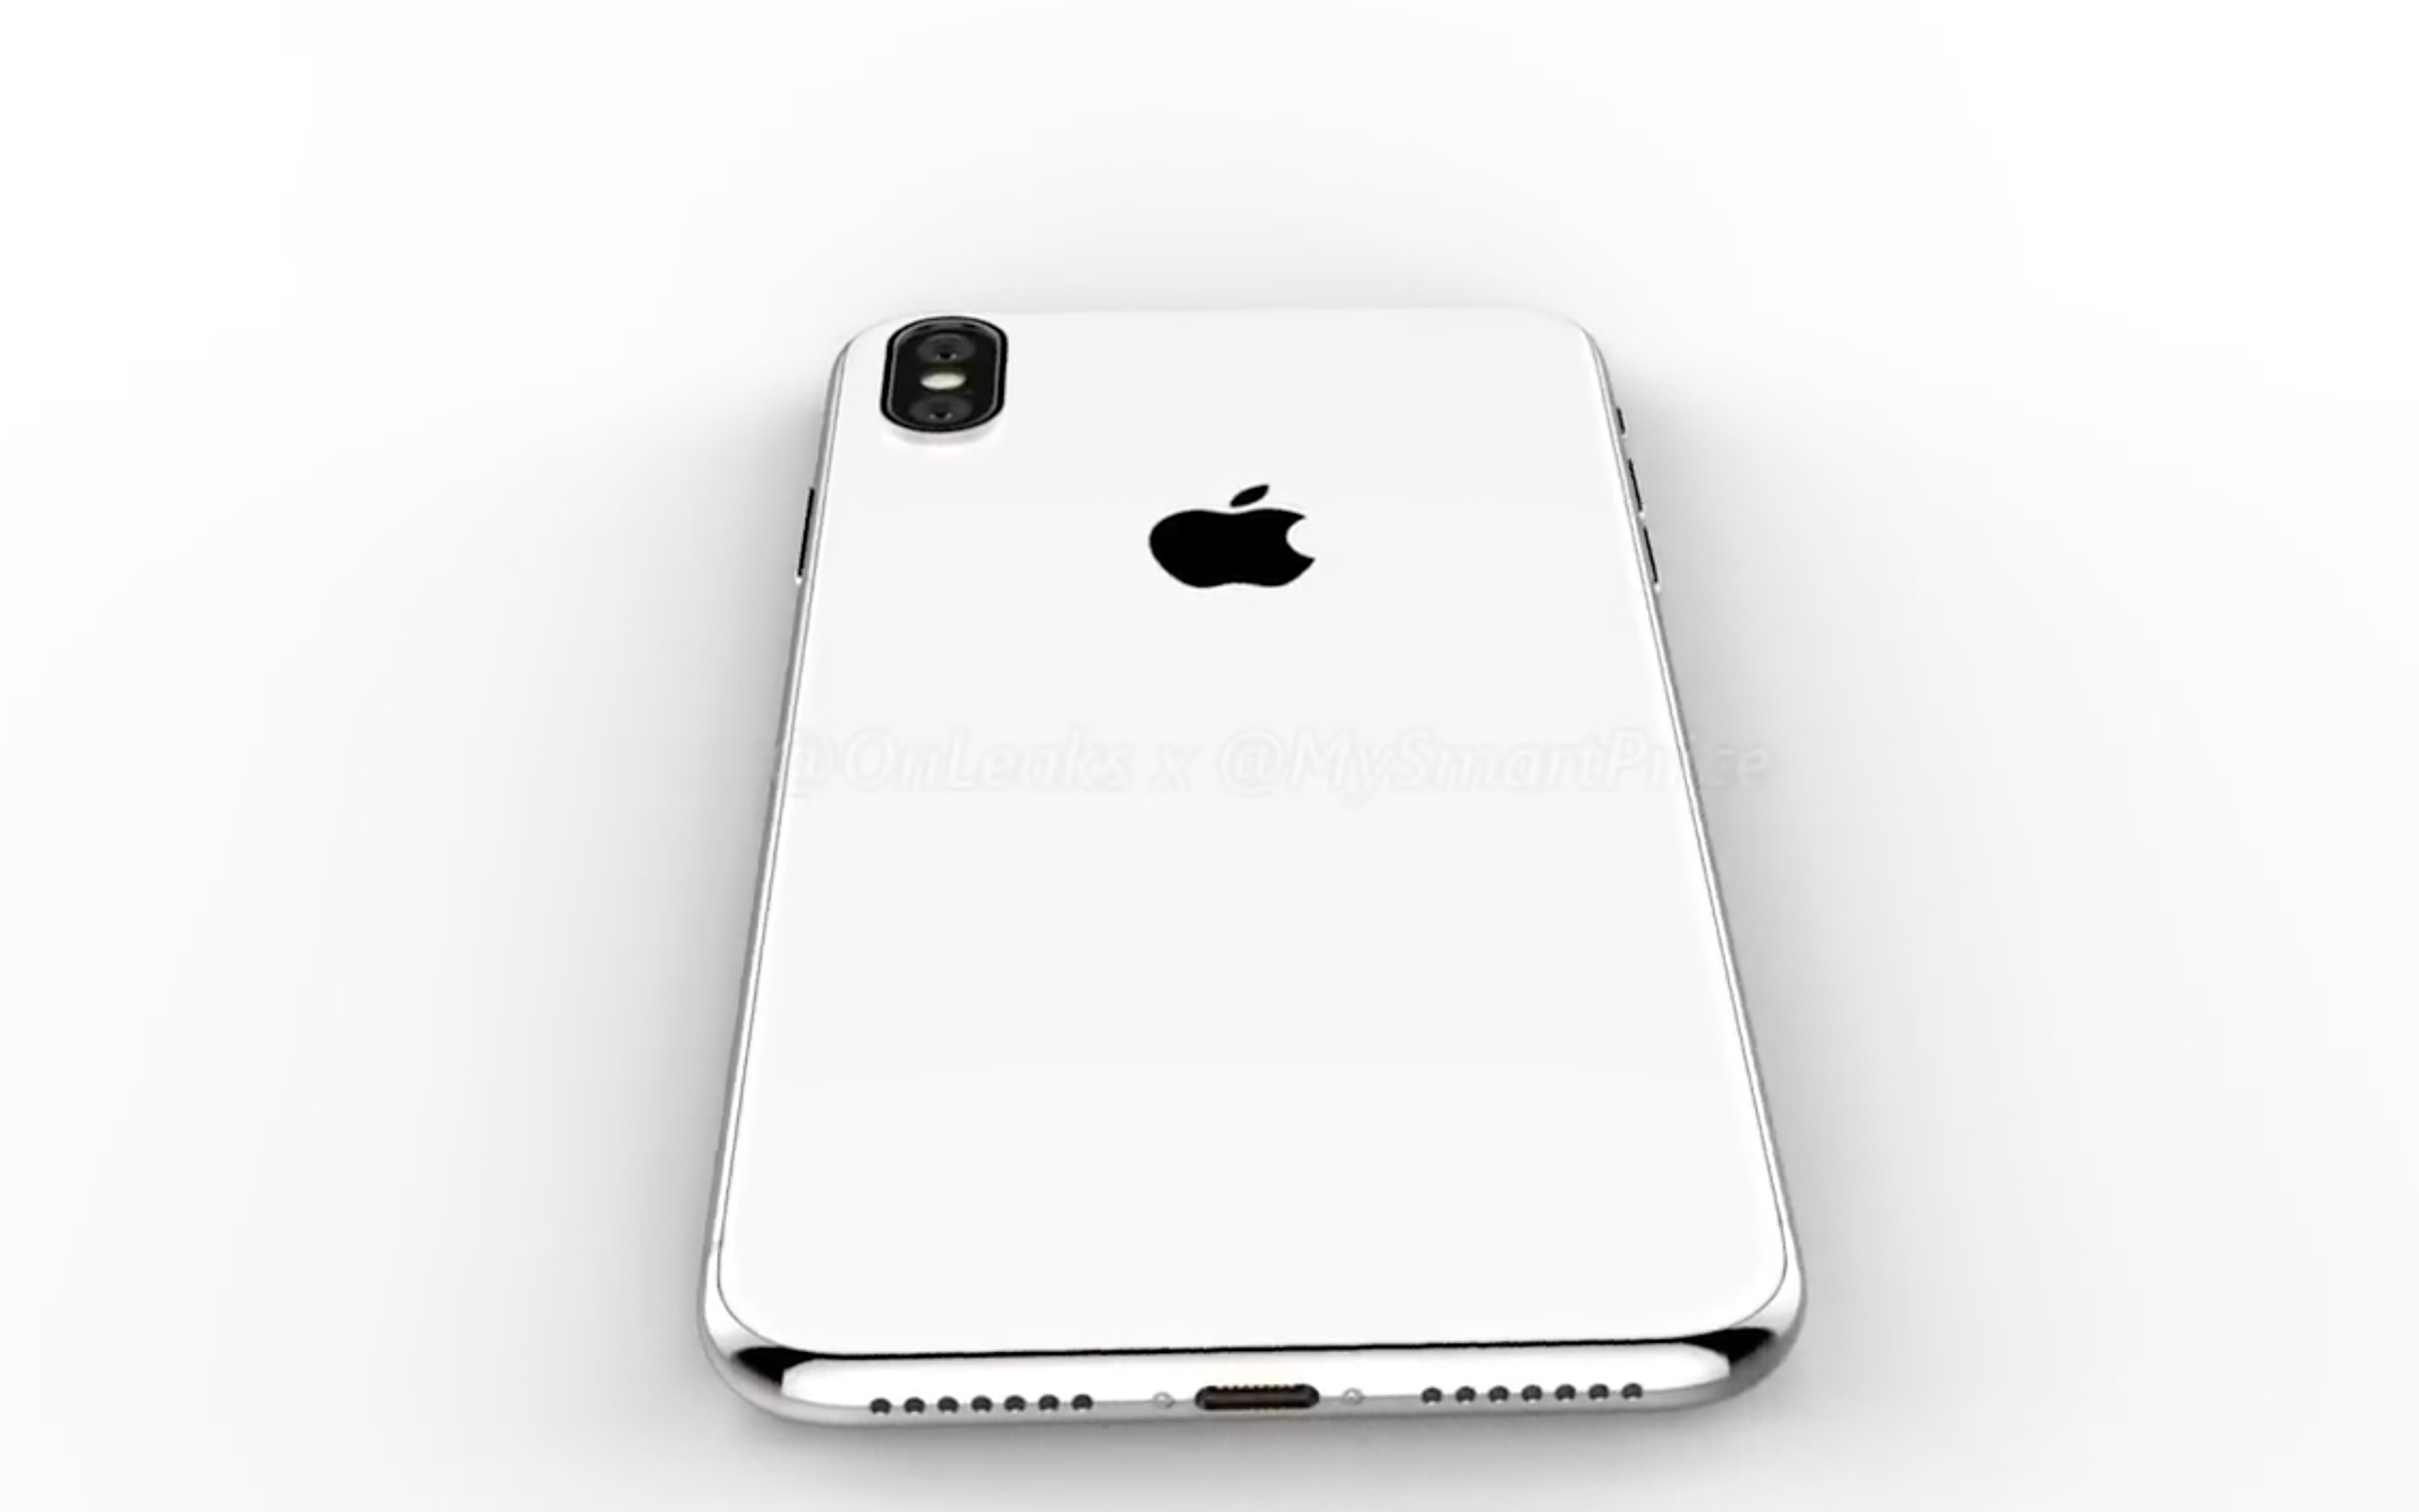 iPhoneX Plus、iPhone9 の新しい画像がリーク。iPhoneX Plus はホワイトが追加